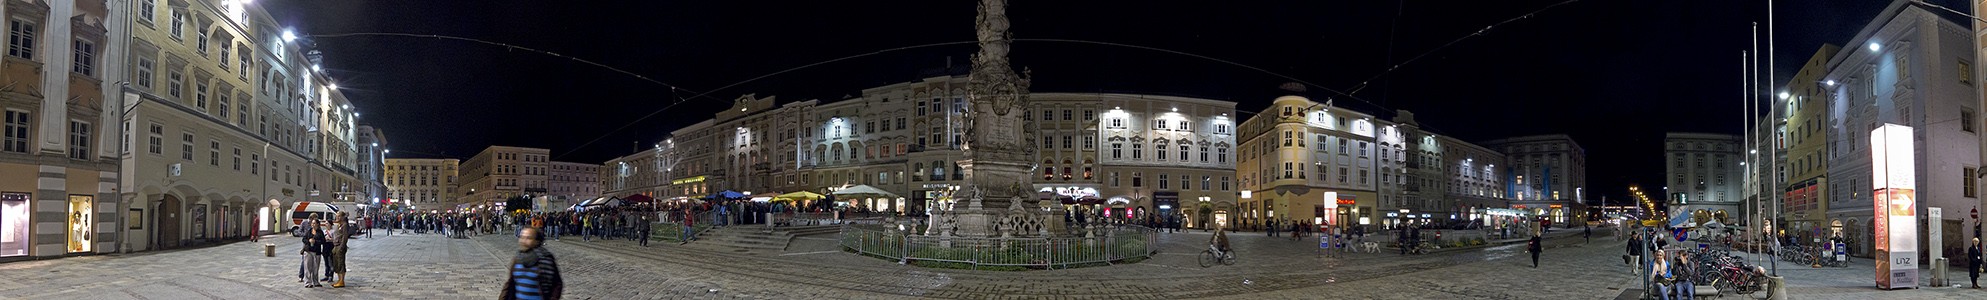 Linz Altstadtviertel: Hauptplatz mit der Dreifaltigkeitssäule